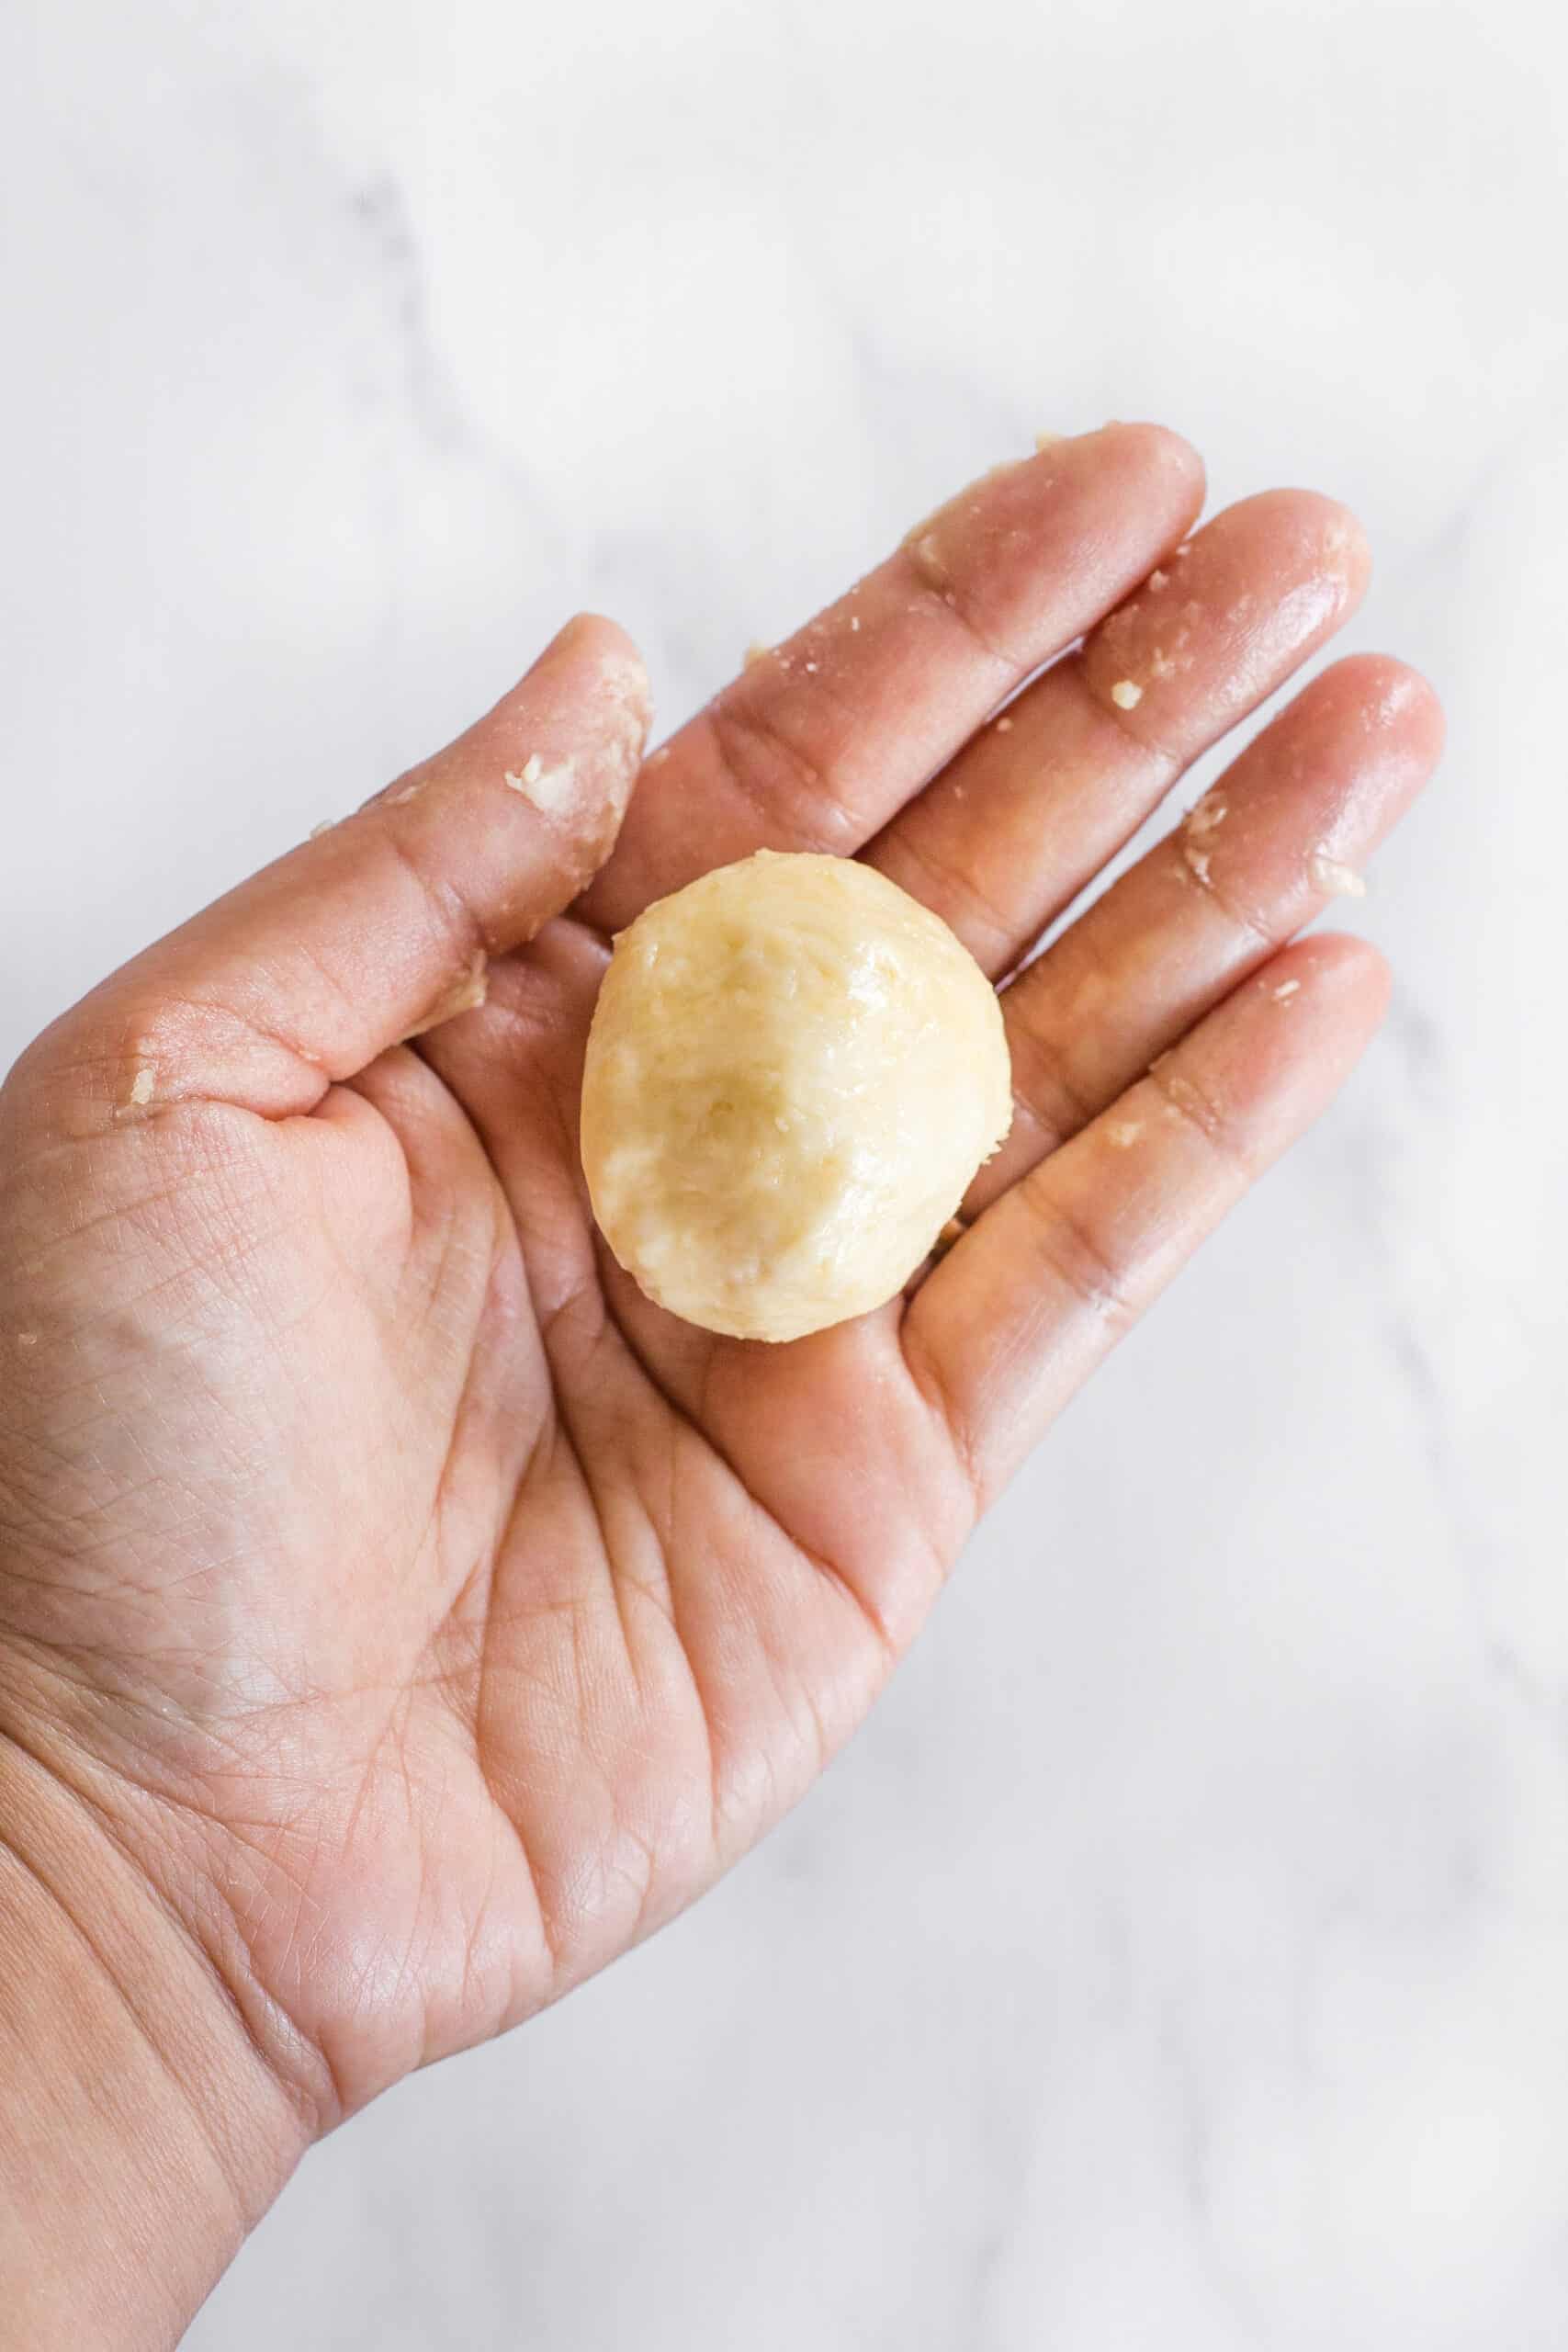 A hand holding a dough ball.